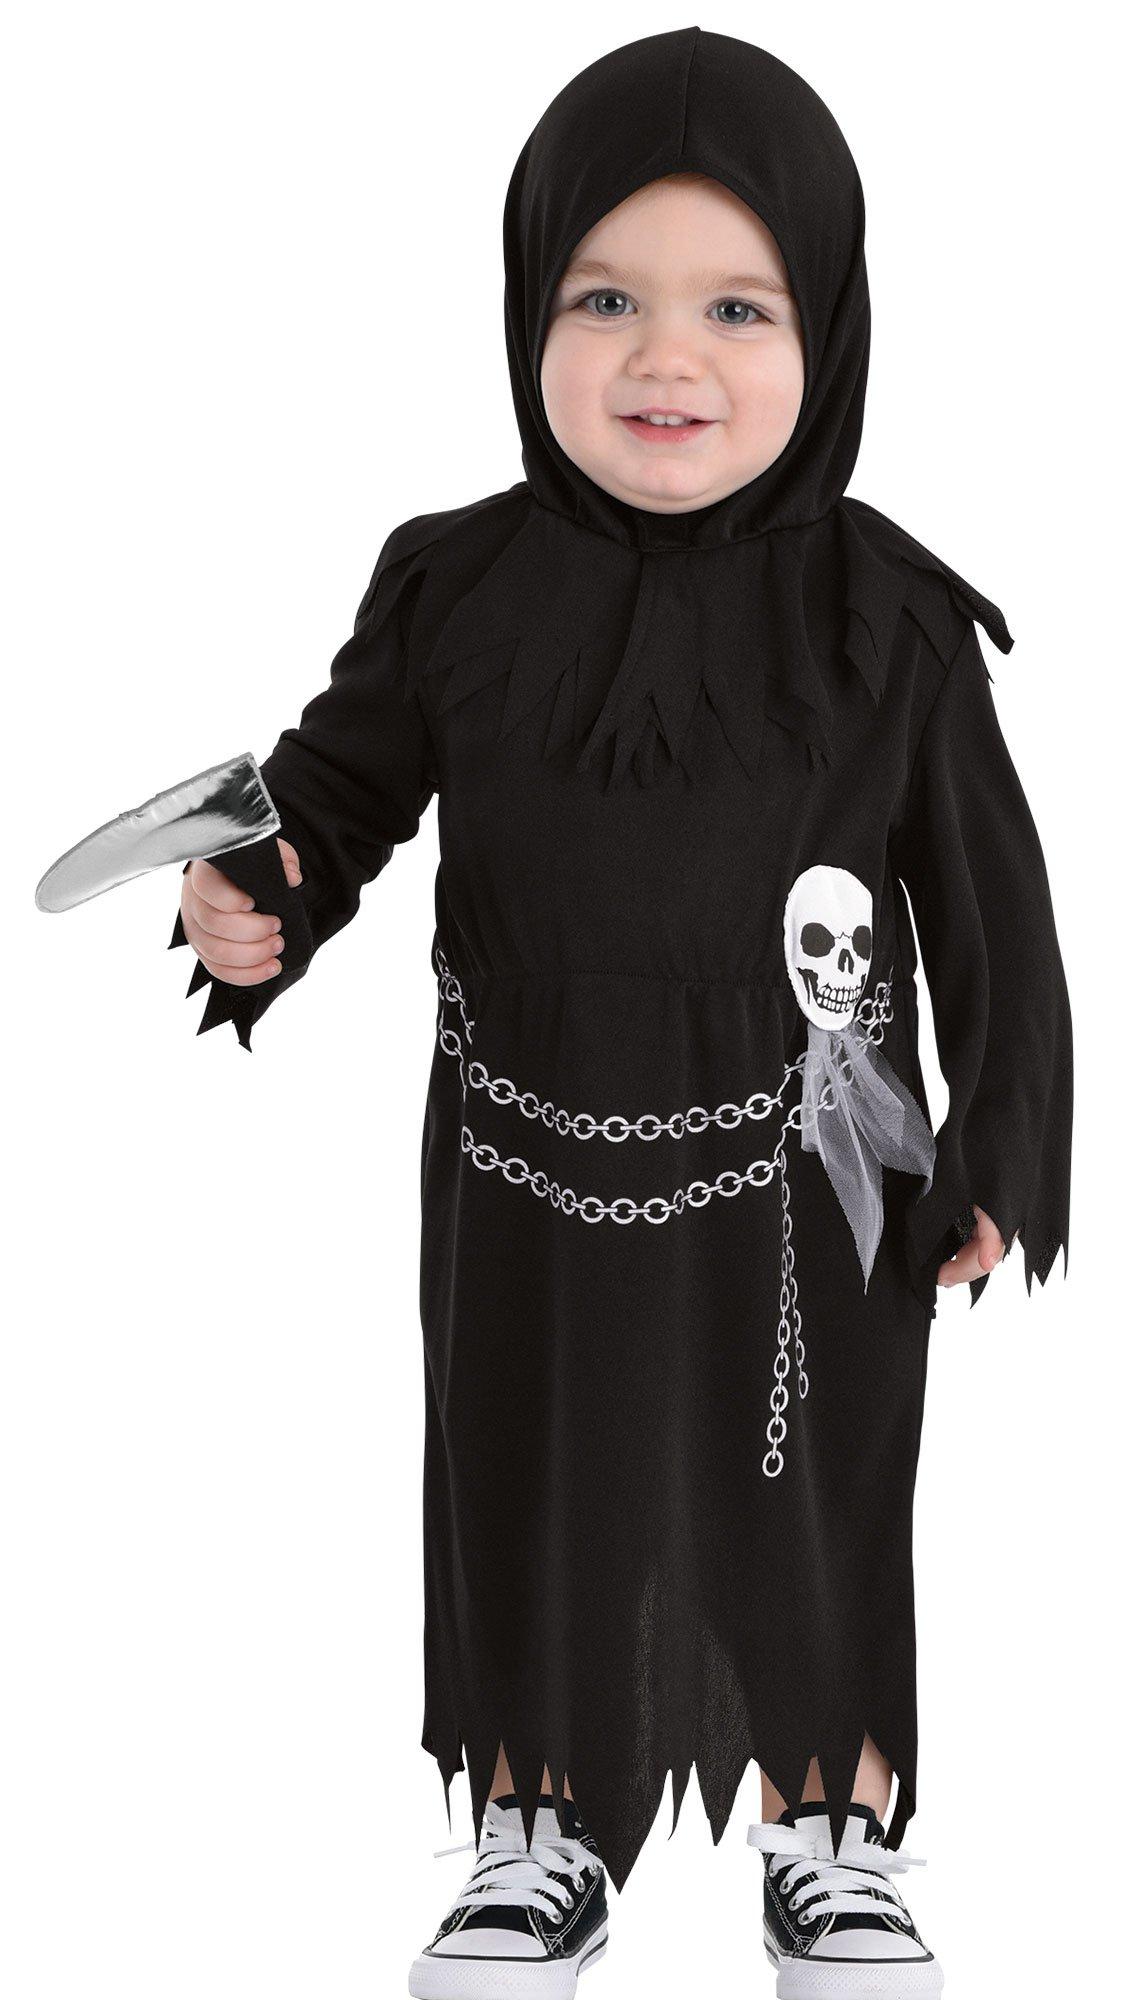 Baby Reaper Costume